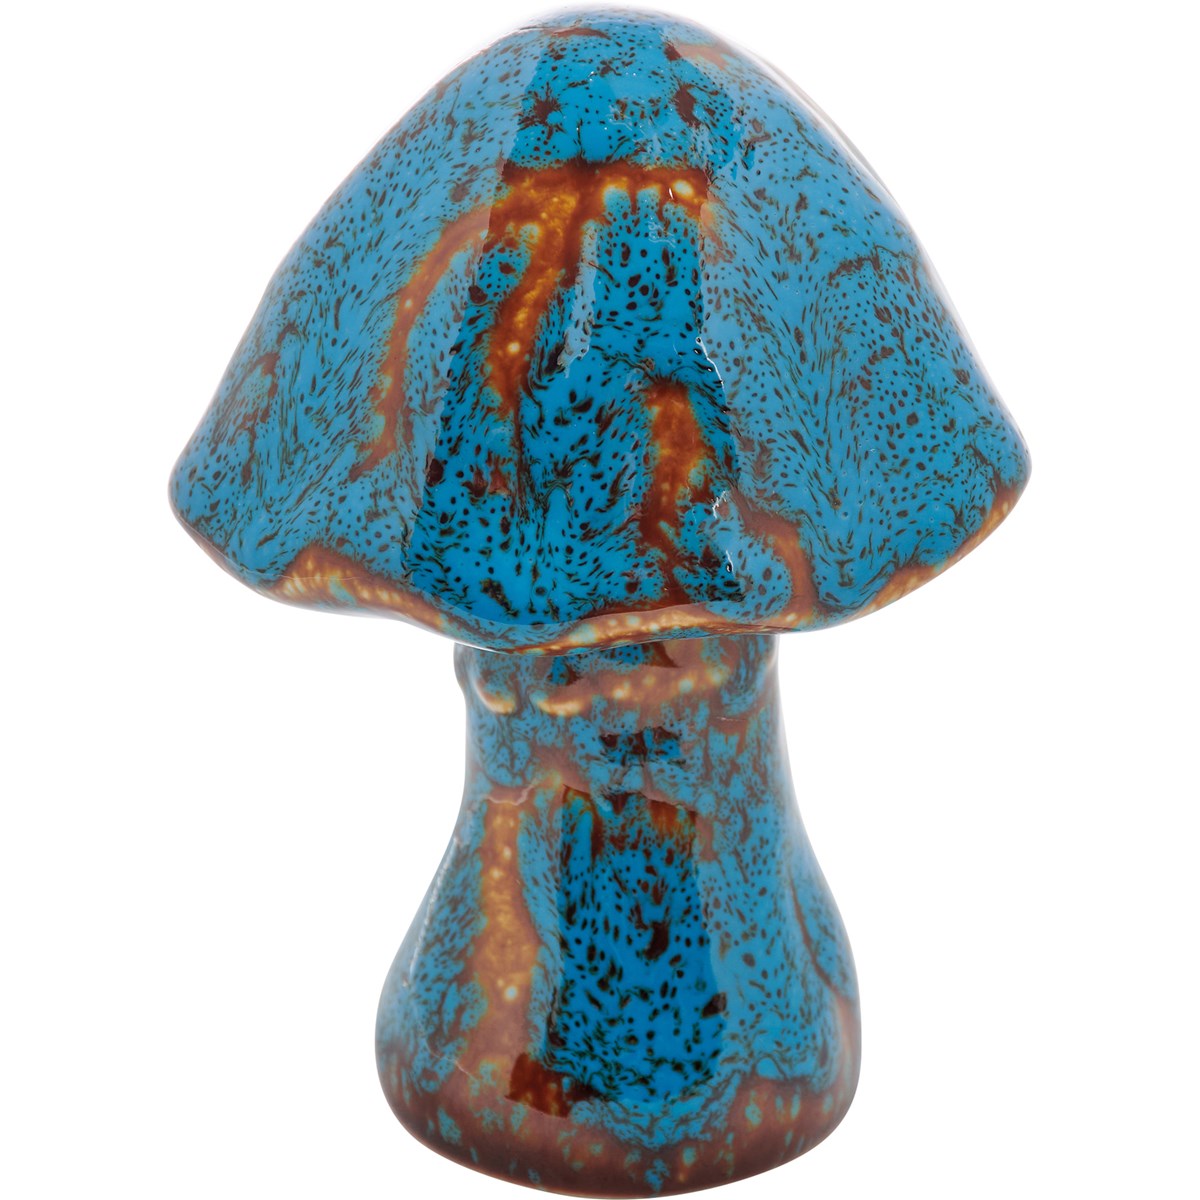 large blue mushroom on a white background.